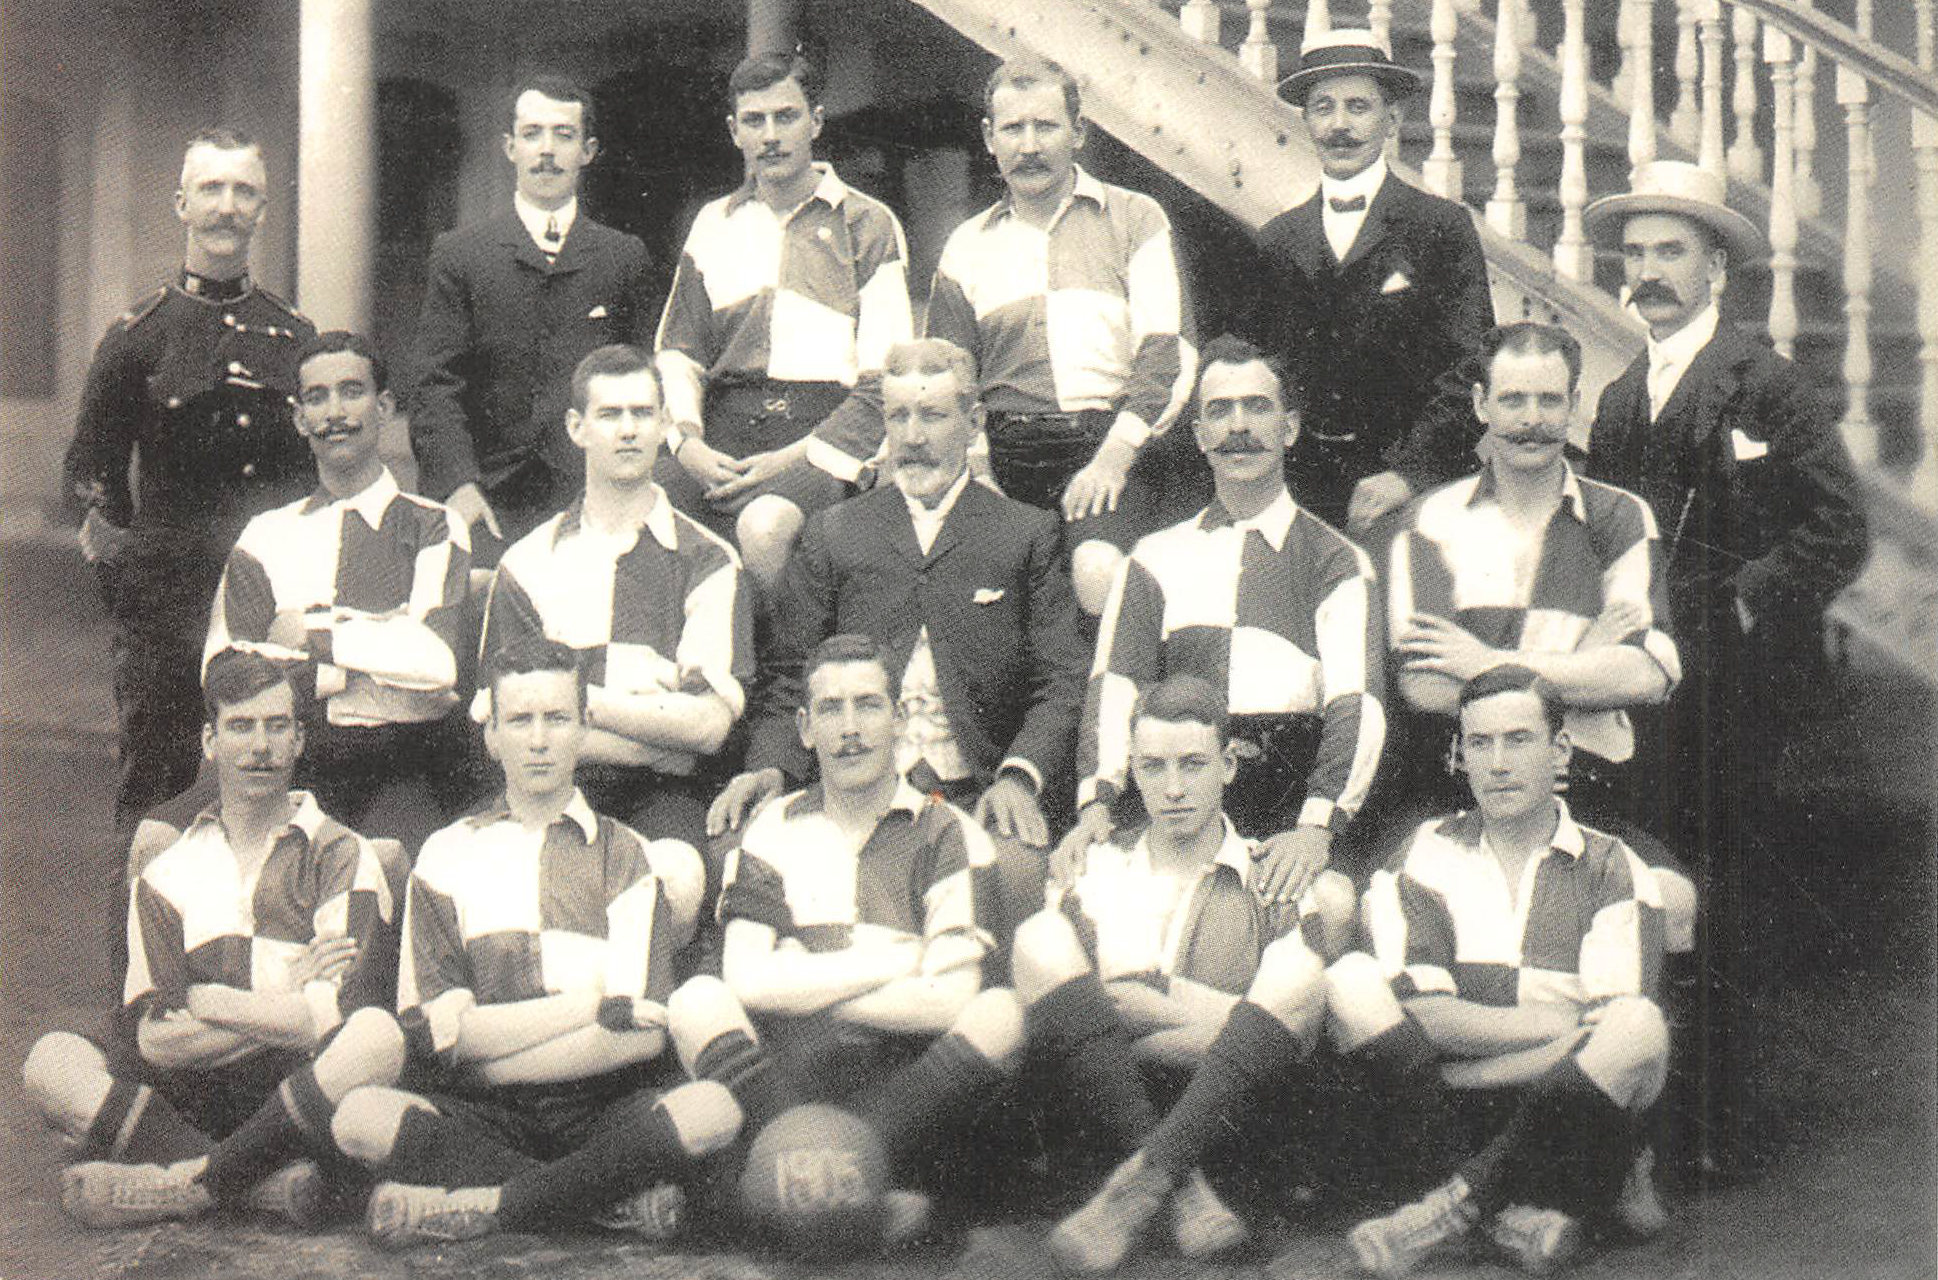 فريق نادي السكة سنة 1905م قبل مباراته مع فريق الواندرز البريطاني وجميعهم أجانب عدا عبدالحميد محمود الجالس أقصى اليسار في المنتصف